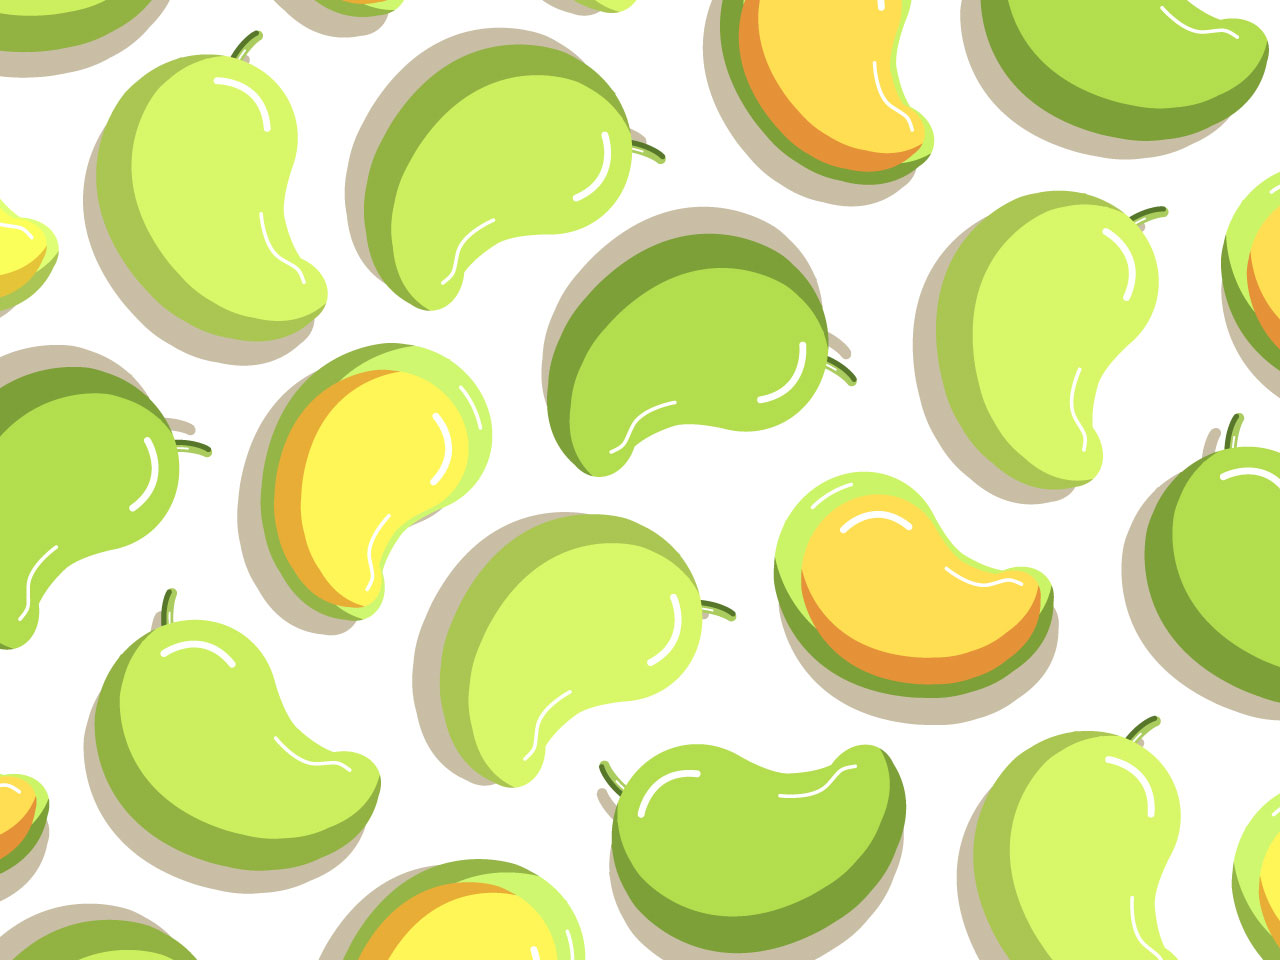 Mango fruit illustration pattern background clipart image